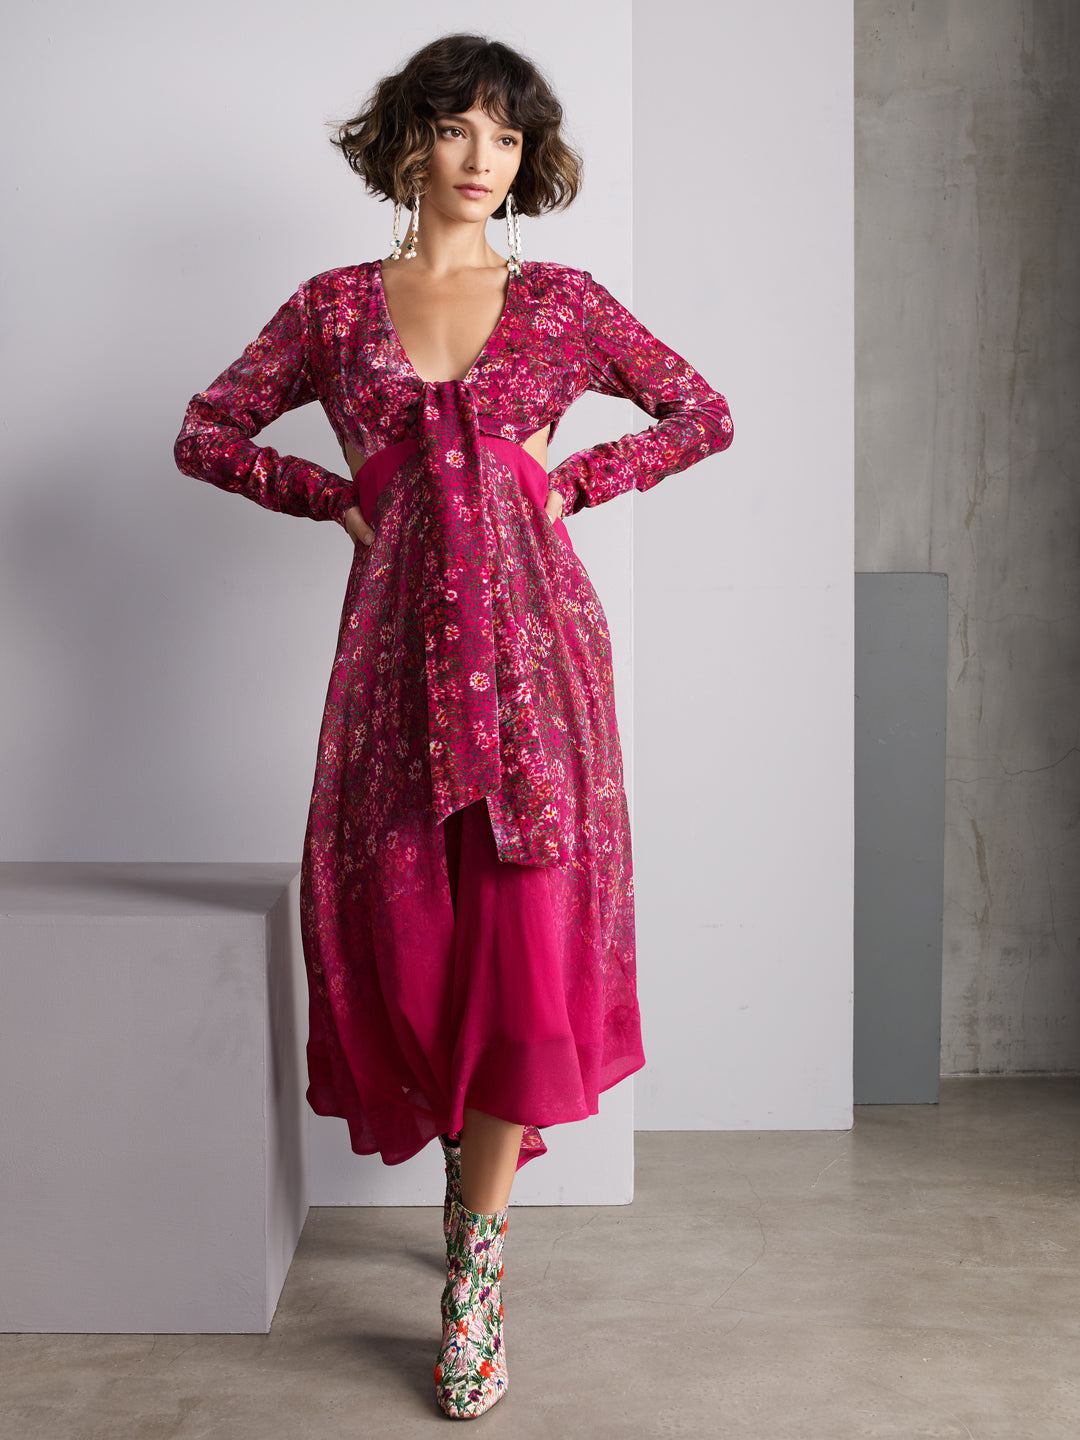 Roopa, Luxury, Sustainable fashion, roopapemmaraju, longdresses, dresses, printeddress, silkdress